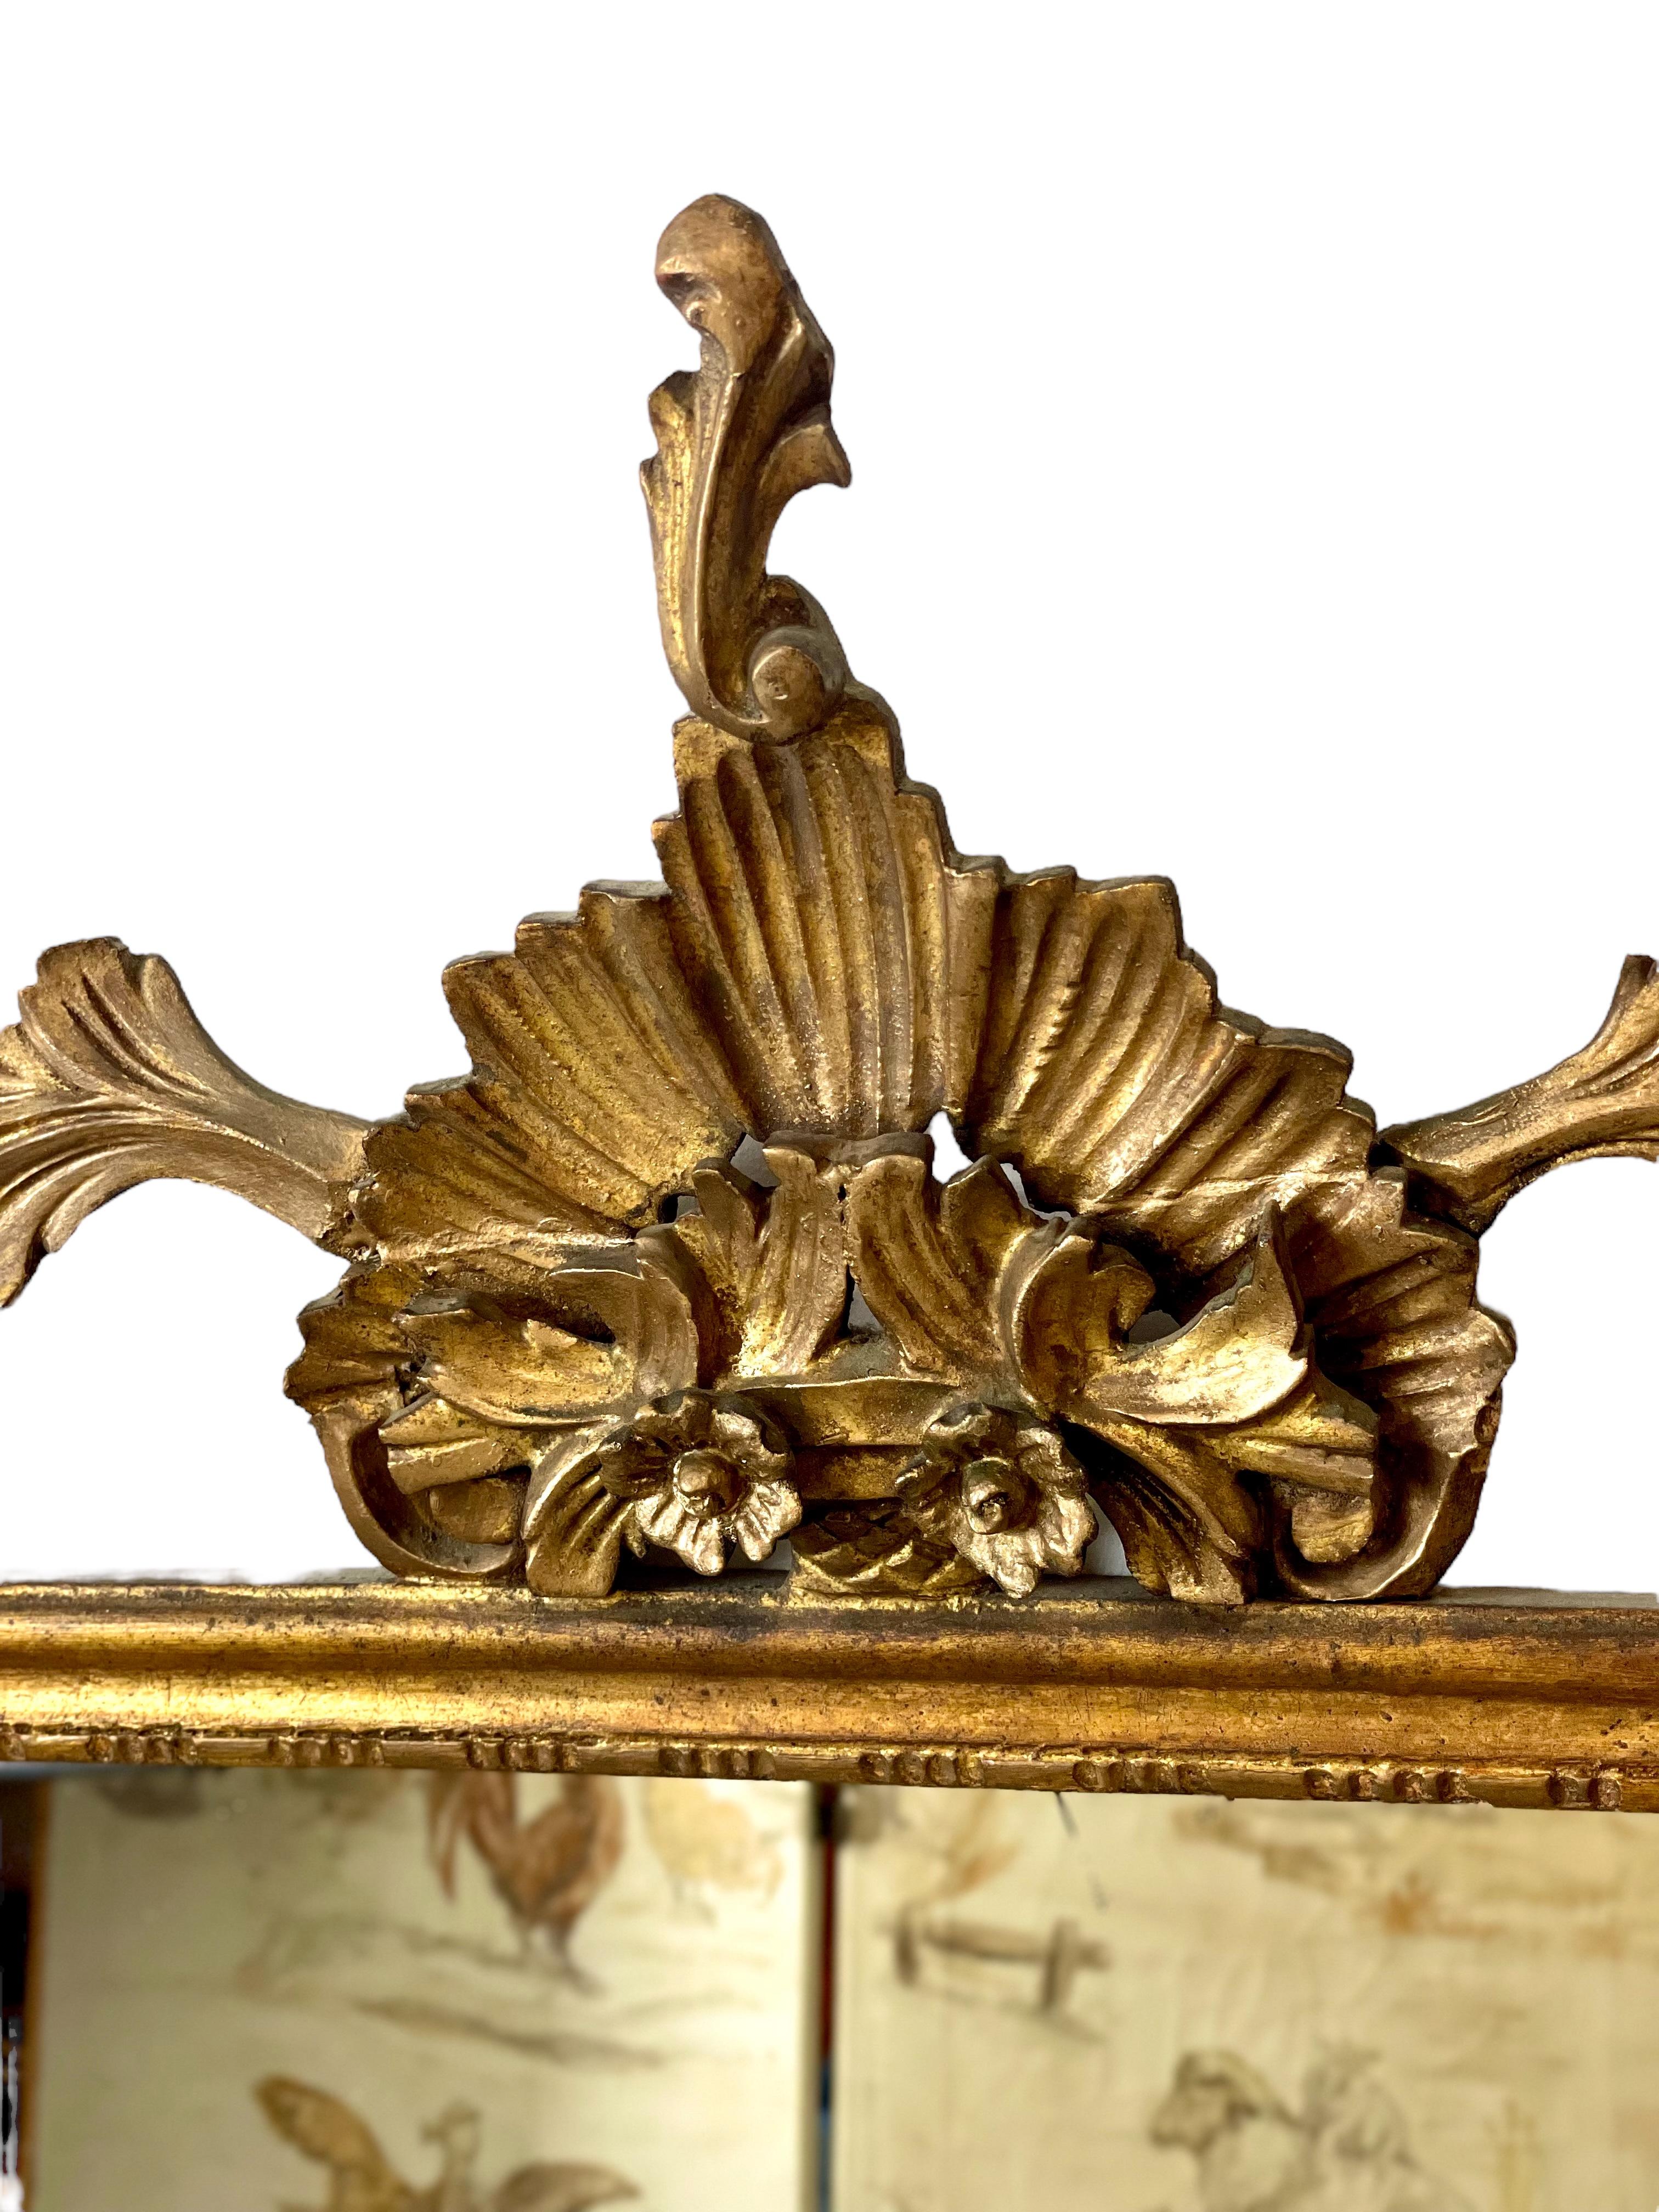 Très beau miroir de cheminée du XIXe siècle en bois doré et stuc. La plaque de miroir rectangulaire est enfermée dans un étroit cadre doré, surmonté d'un cartouche surdimensionné et orné, avec des guirlandes de feuilles d'acanthe et de roses de